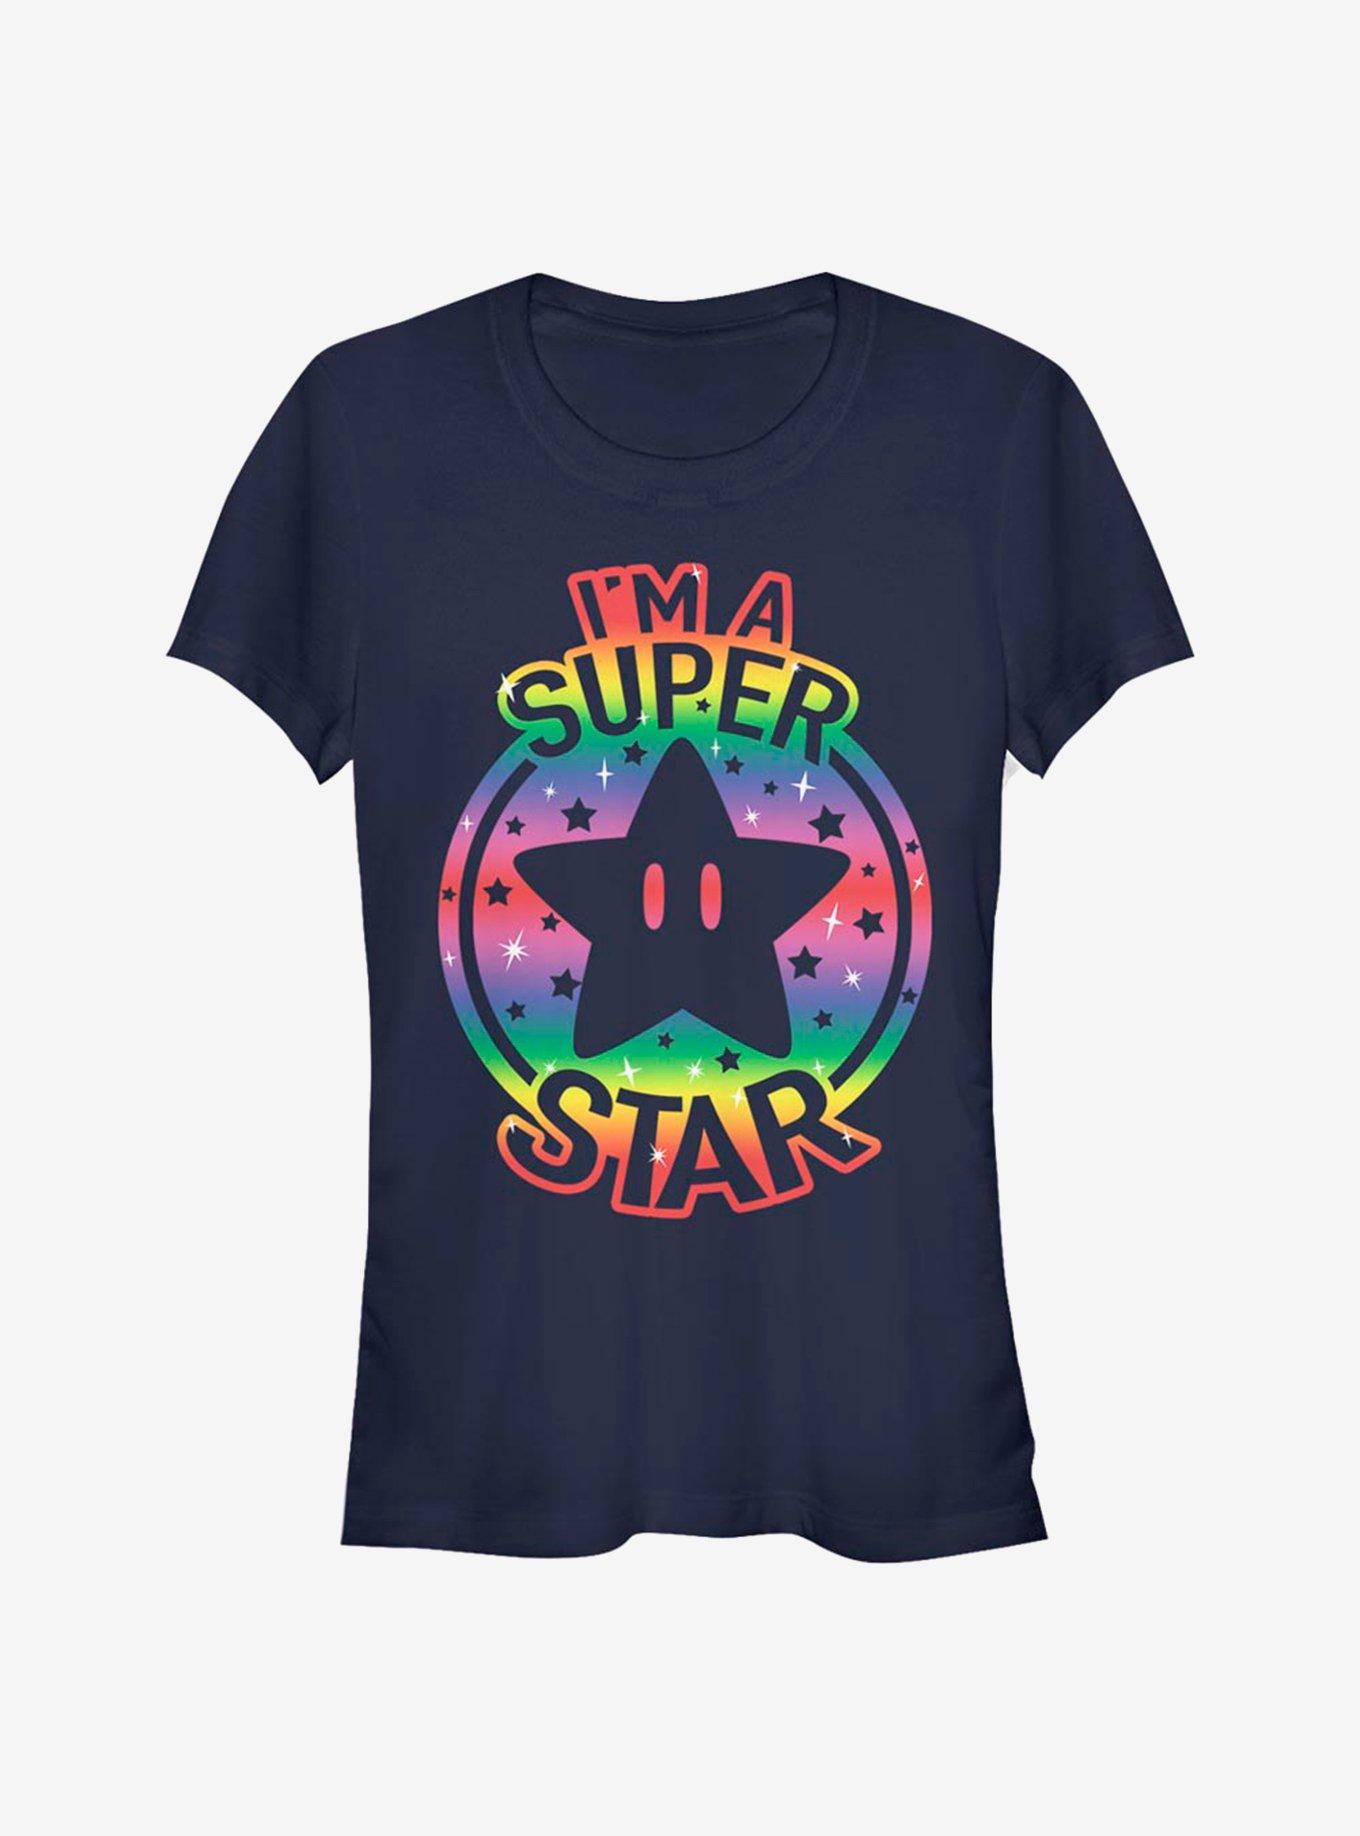 Super Mario Rainbow Star Girls T-Shirt